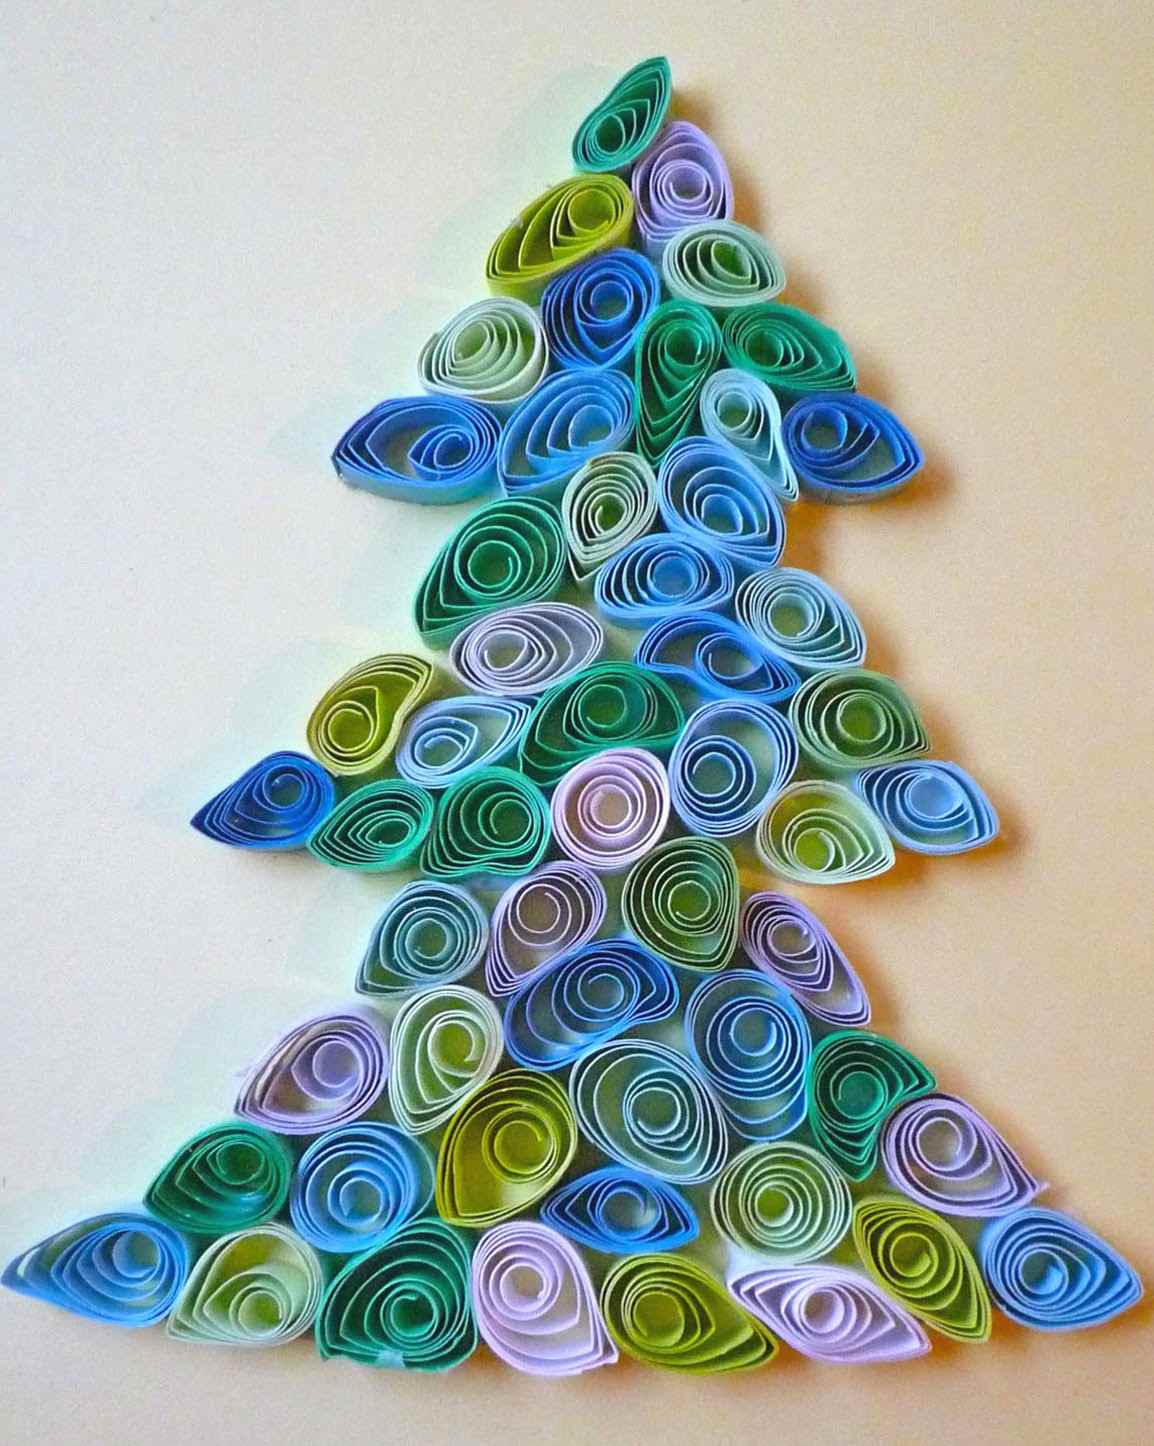 příklad vytvoření světlého vánočního stromku z lepenky sami